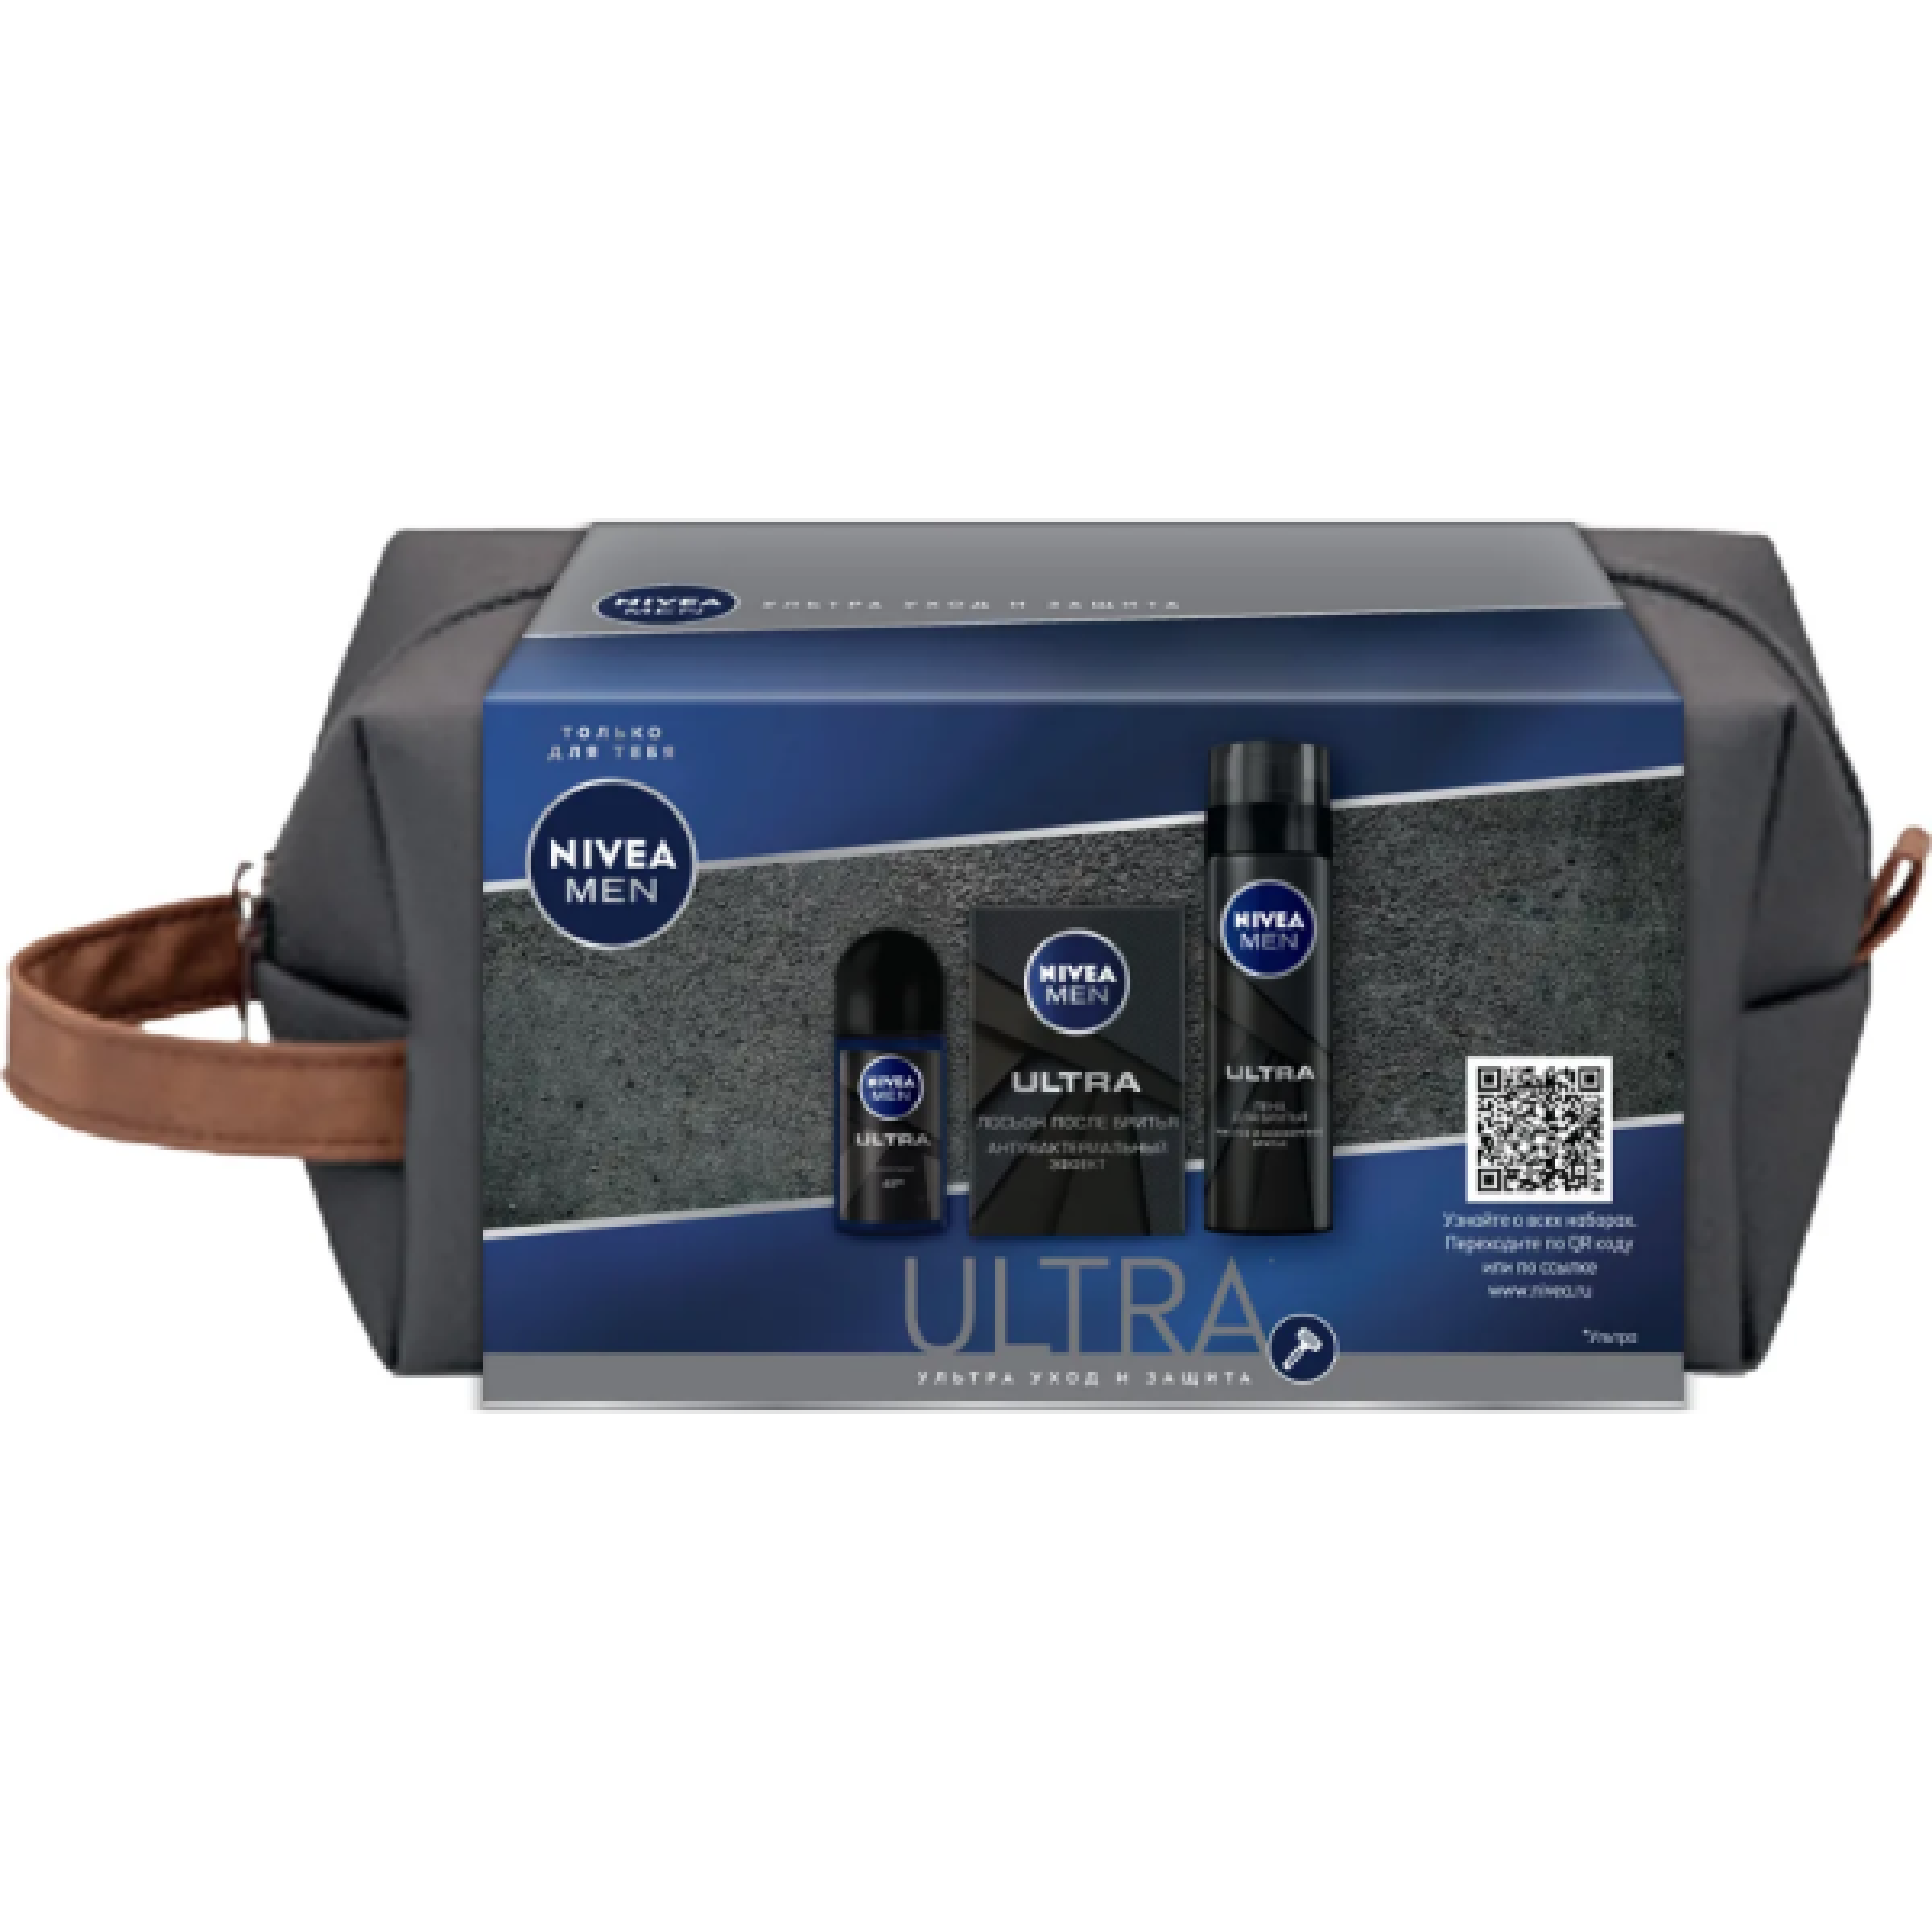 Подарочный набор NIVEA MEN ULTRA в косметичке Пена, 200 мл. + Лосьон, 100 мл. + антиперспирант ролик, 50 мл.